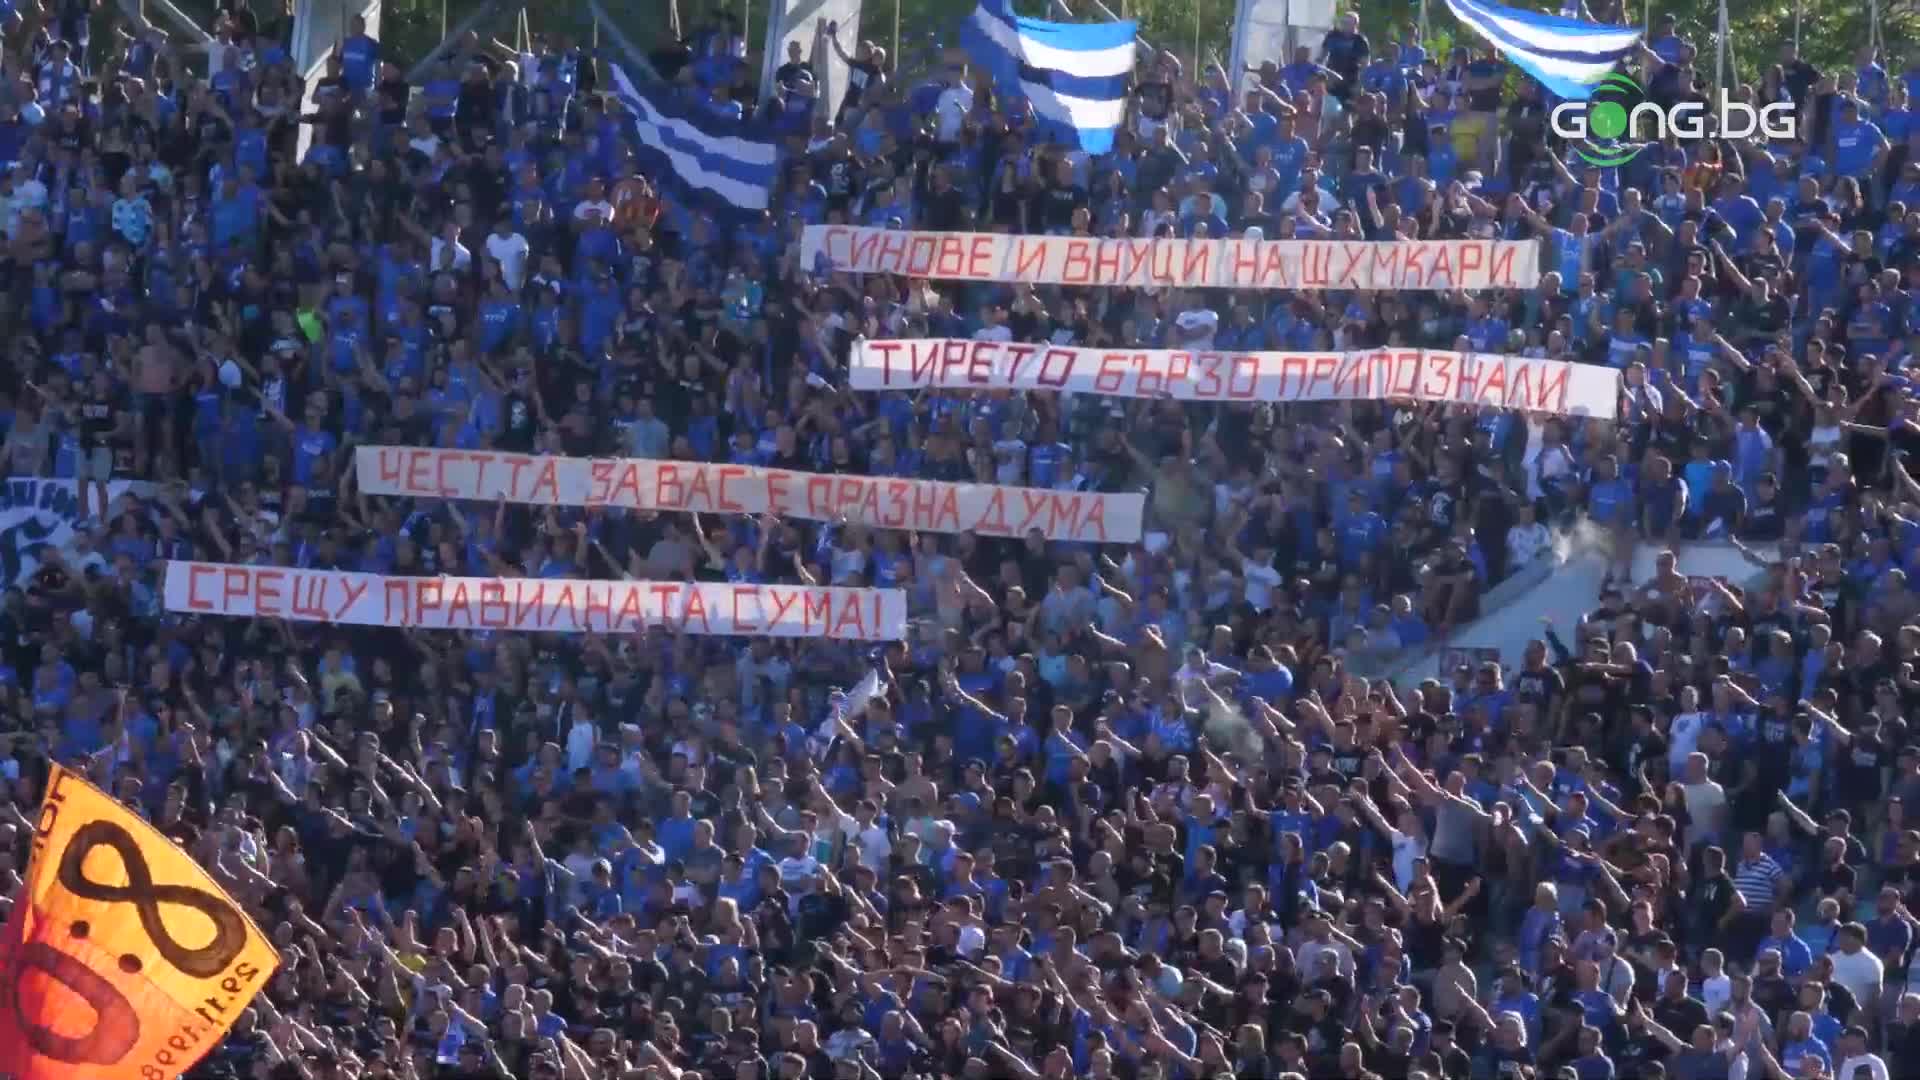 "Сините" фенове зачекнаха ЦСКА